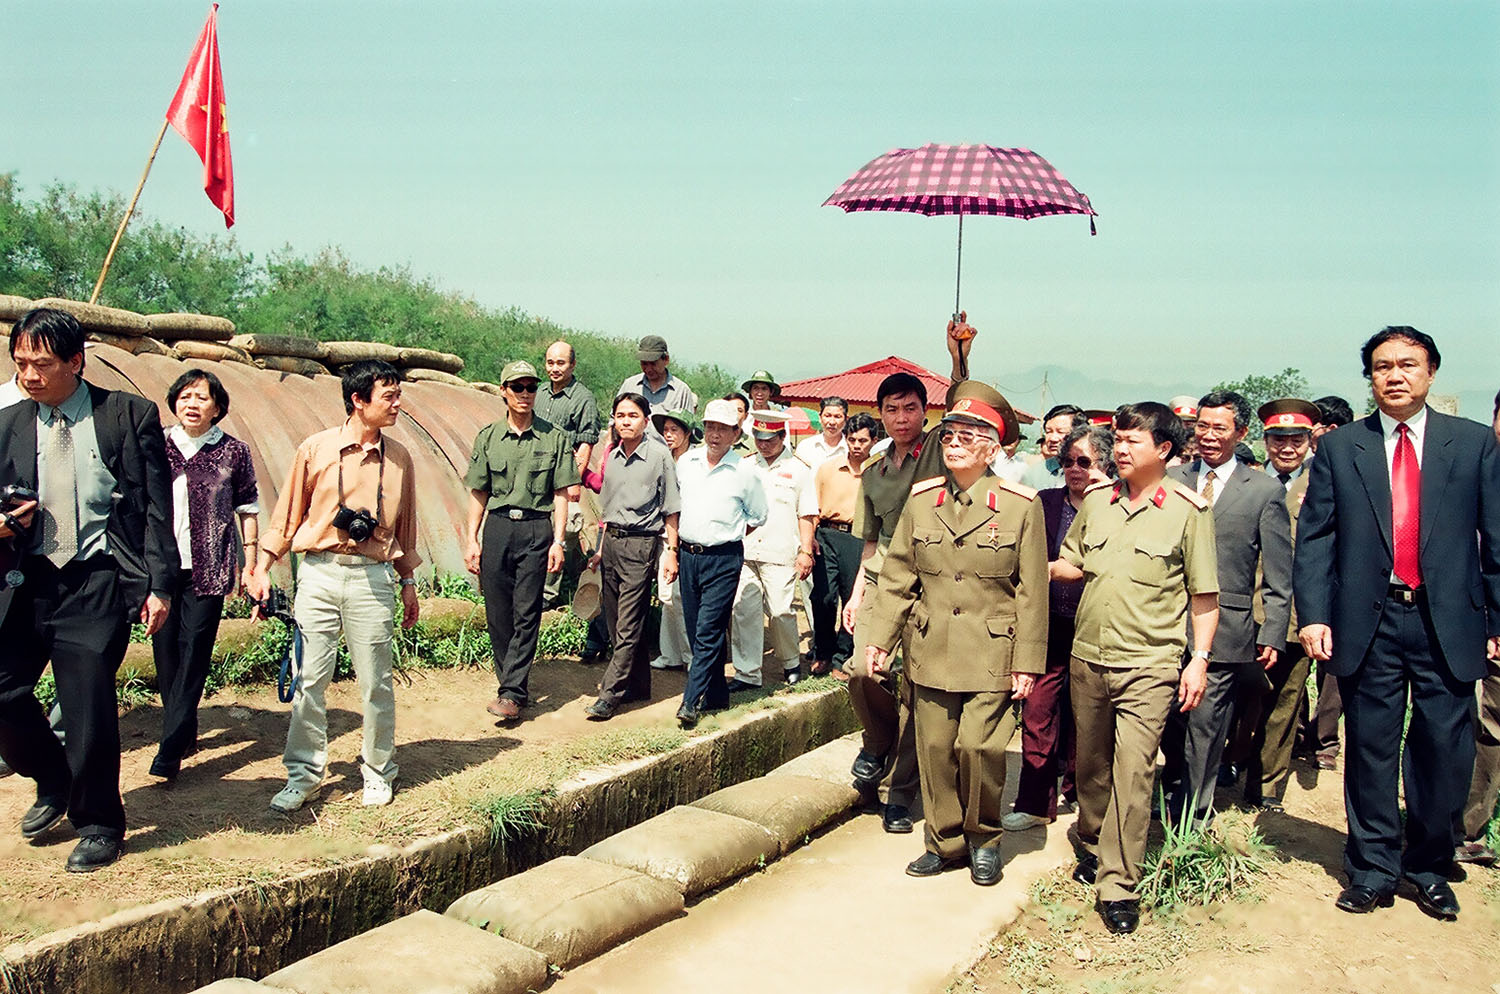 Đại tướng Võ Nguyên Giáp thăm Hầm chỉ huy của quân đội Pháp thua trận năm 1954 ở Điện Biên Phủ được Đại tá, nhà báo, NSNA Trần Hồng chụp năm 2004.